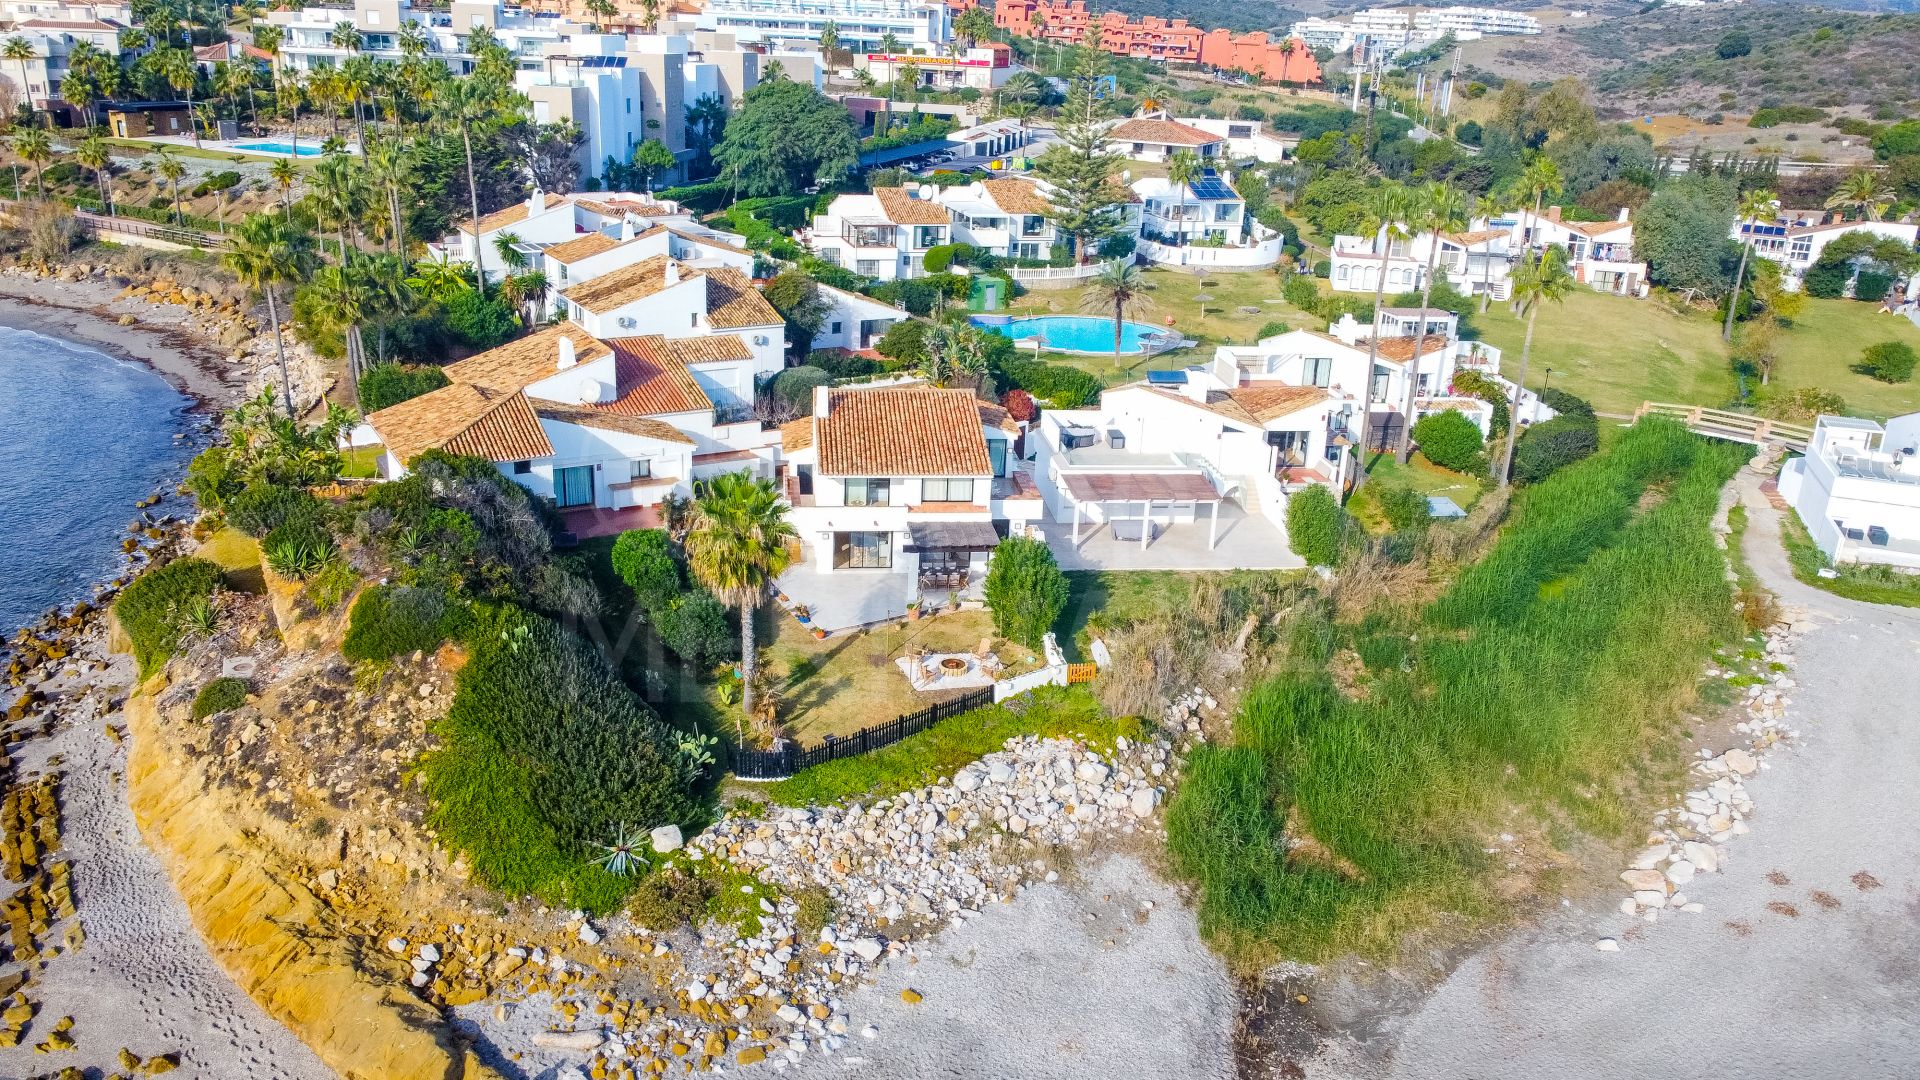 Villa en primera línea de playa en venta en Bahía Dorada, Estepona, con acceso directo a la playa.